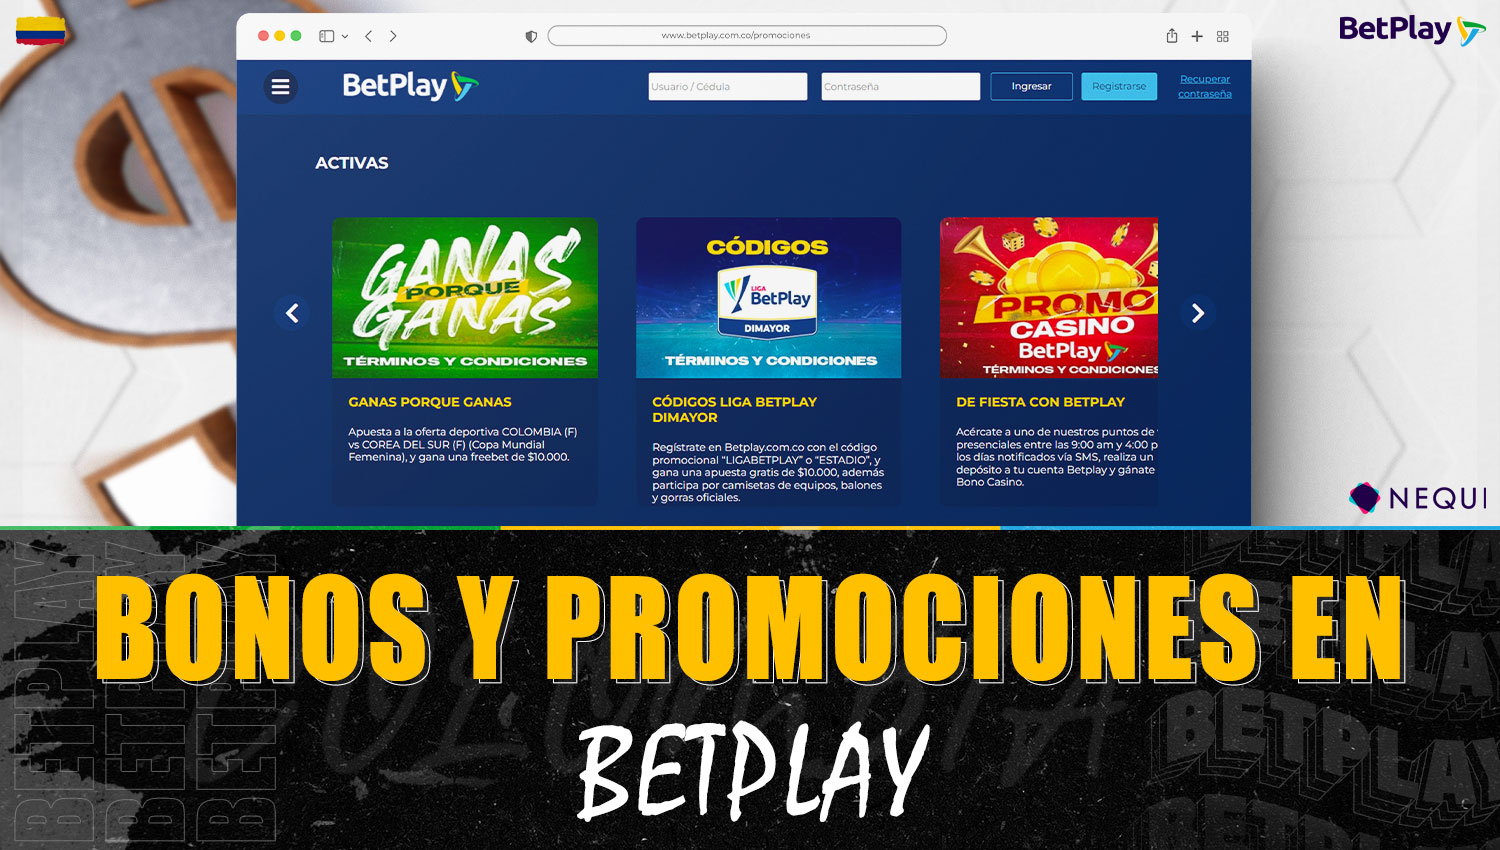 Descripción detallada de bonificaciones y promociones en la plataforma Betplay para jugadores colombianos